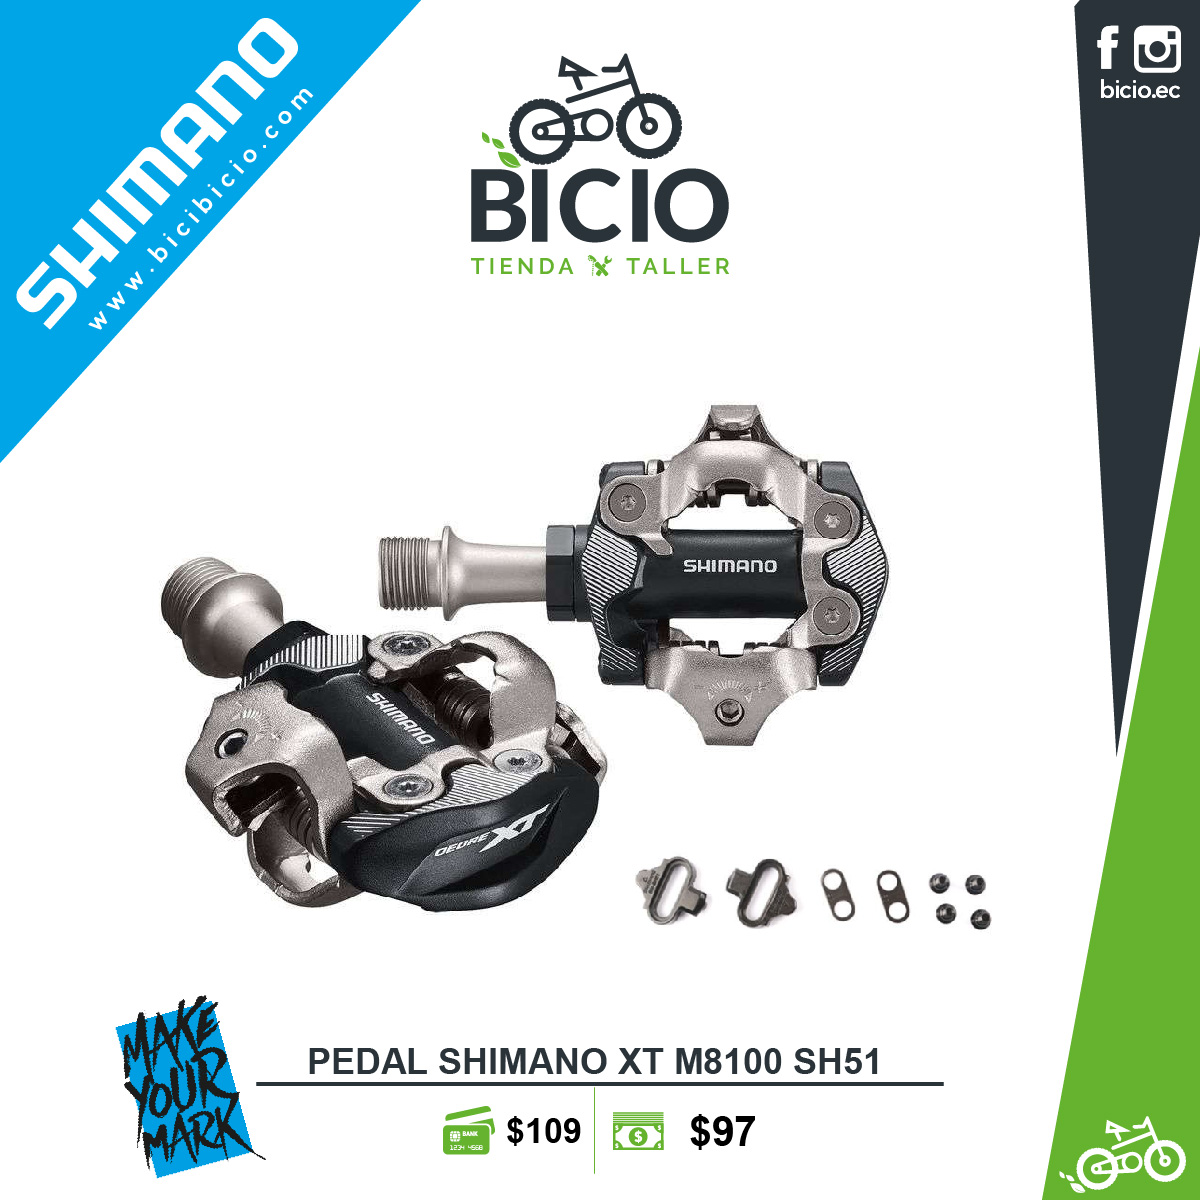 Pedales Shimano Deore XT M8100 - Bicio tienda - taller de bicicletas